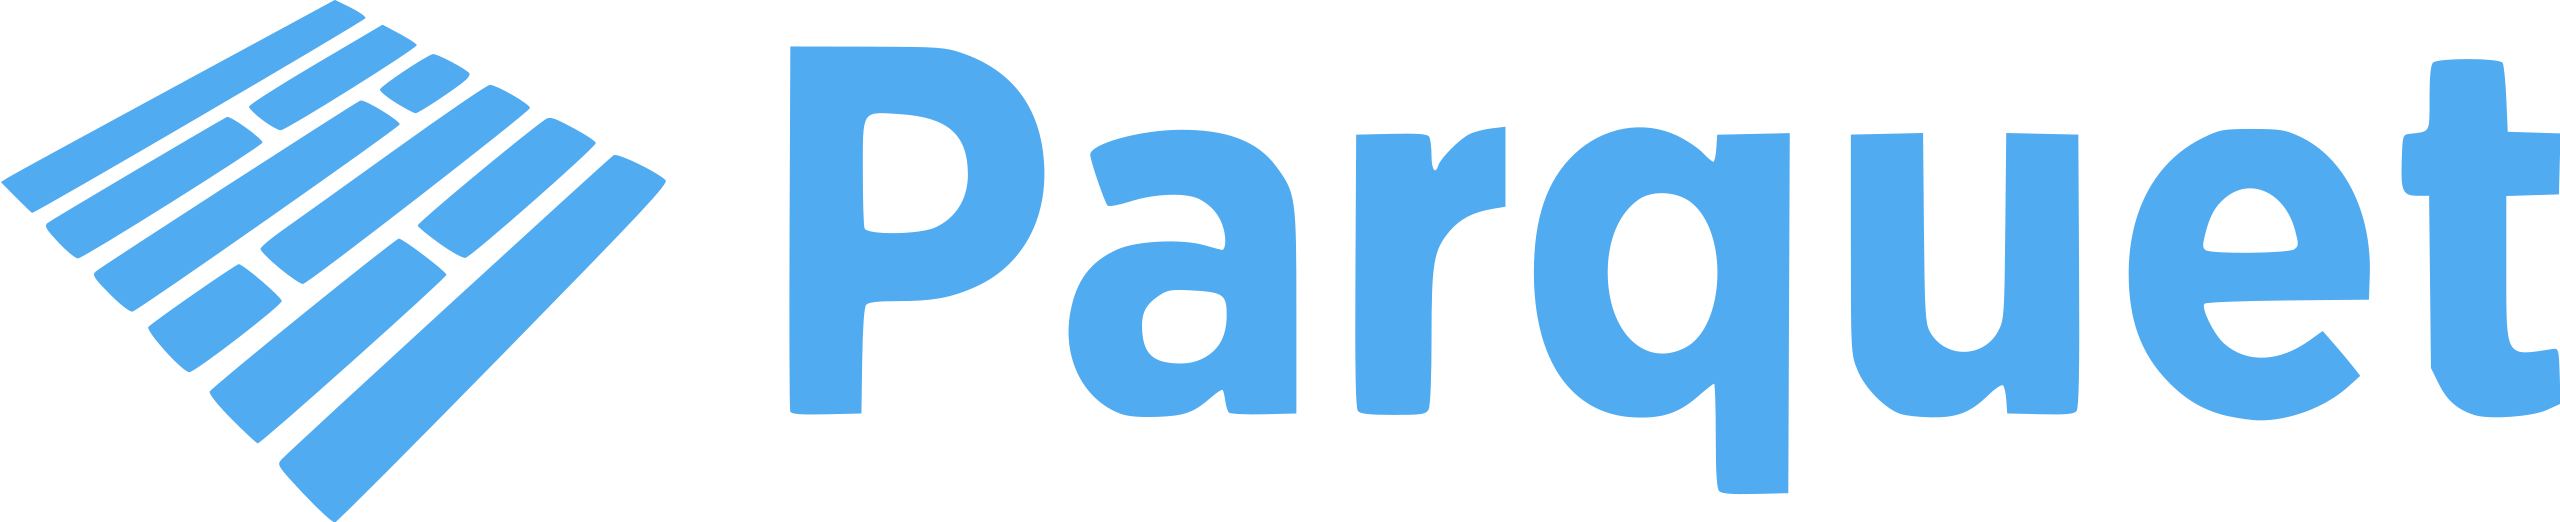 Apache_Parquet_logo.